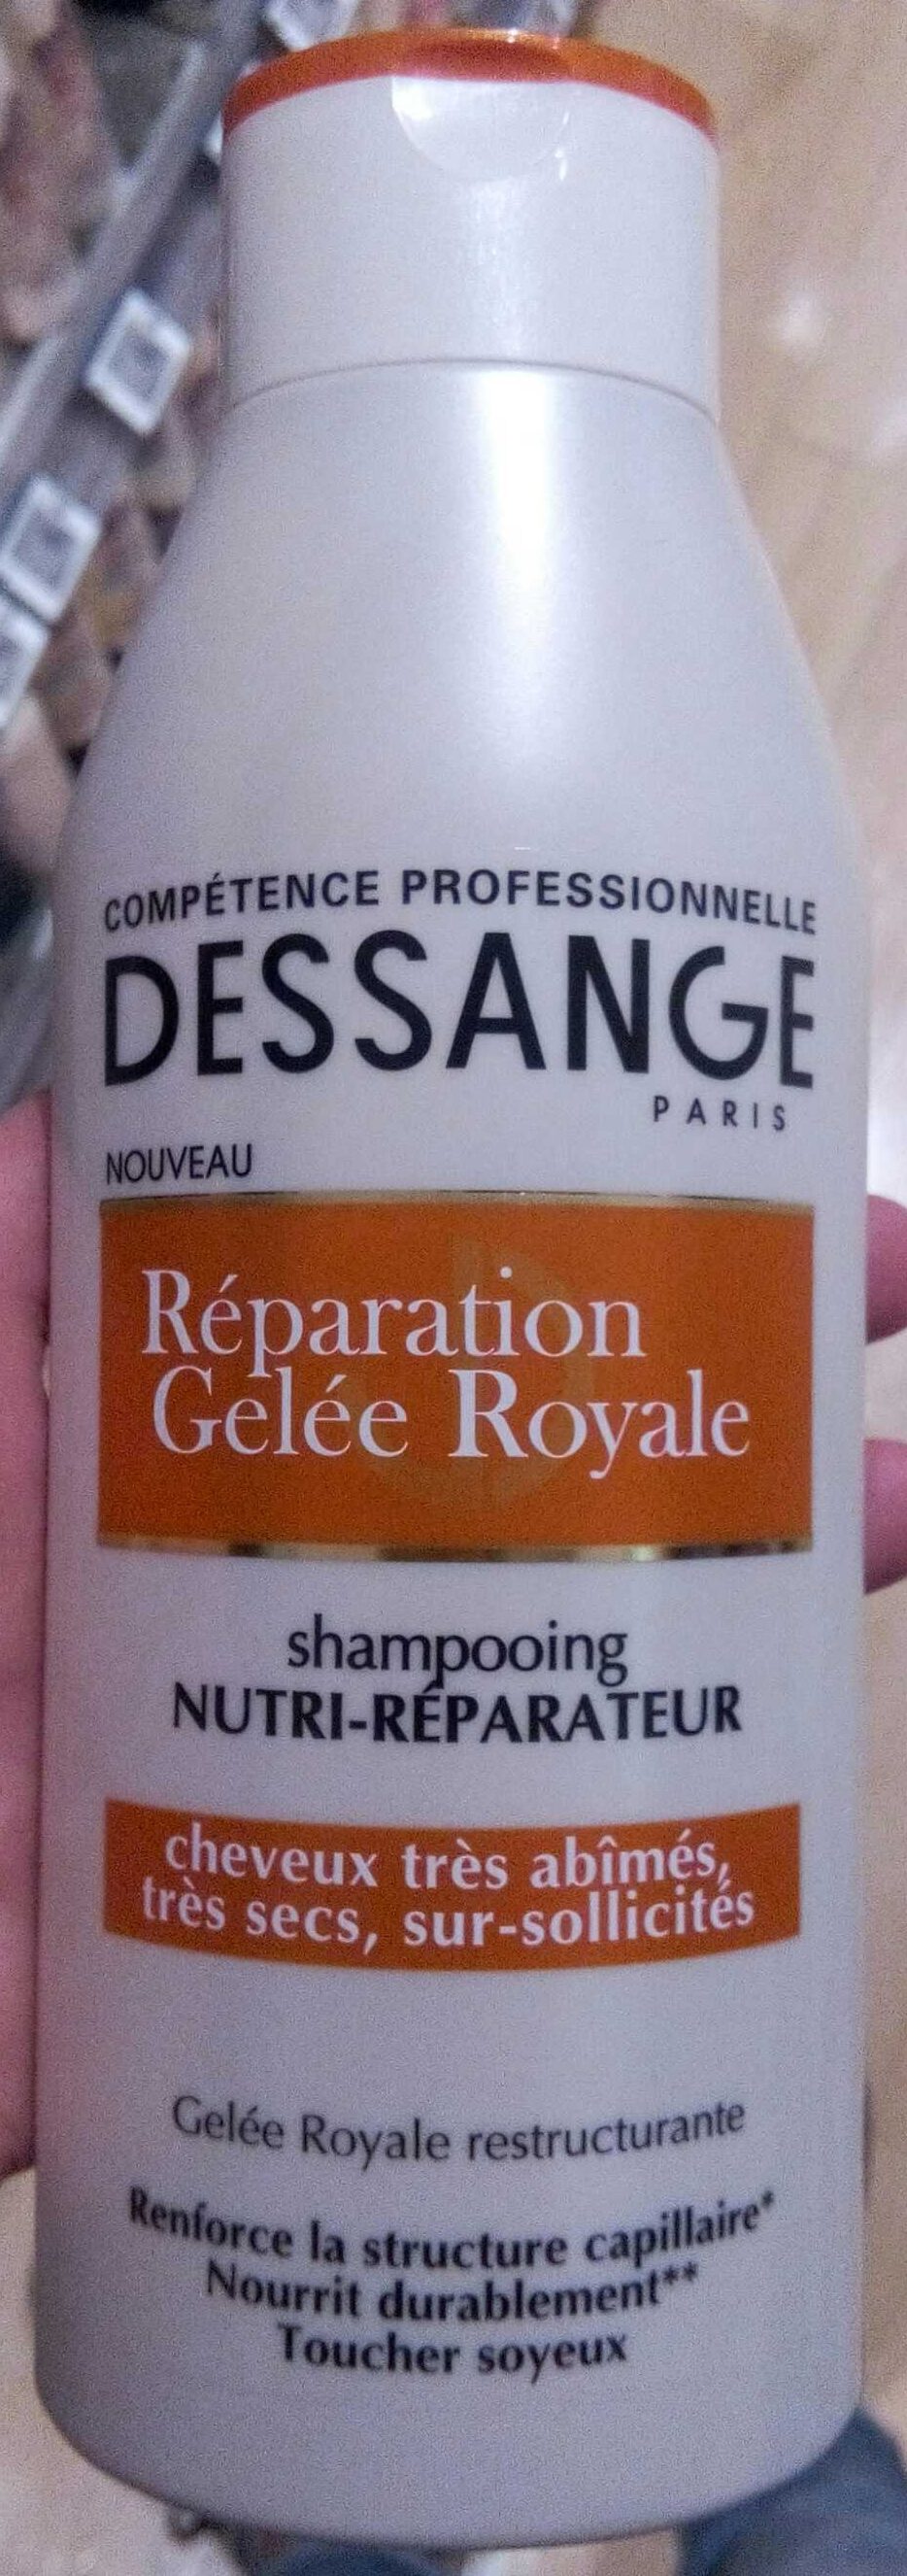 Shampooing nutri-réparateur réparation gelée royale - Tuote - fr